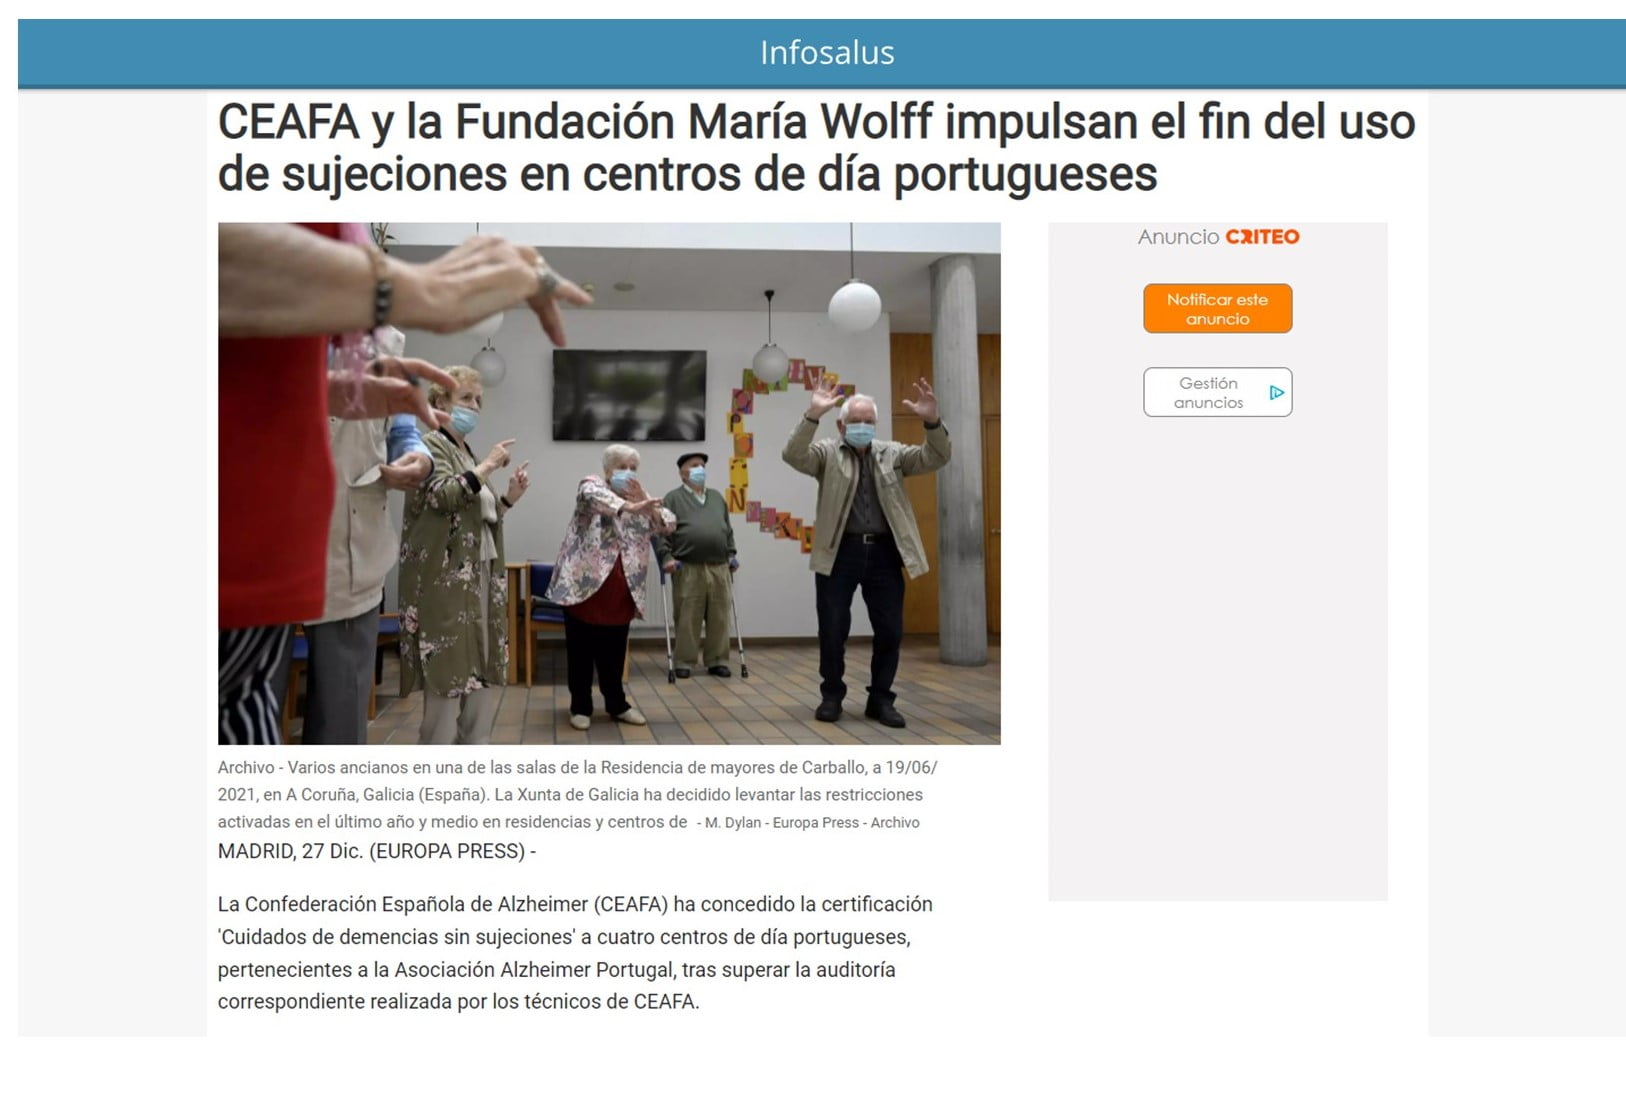 CEAFA y Fundación María Wolff impulsan los cuidados sin sujeciones en centros de Portugal